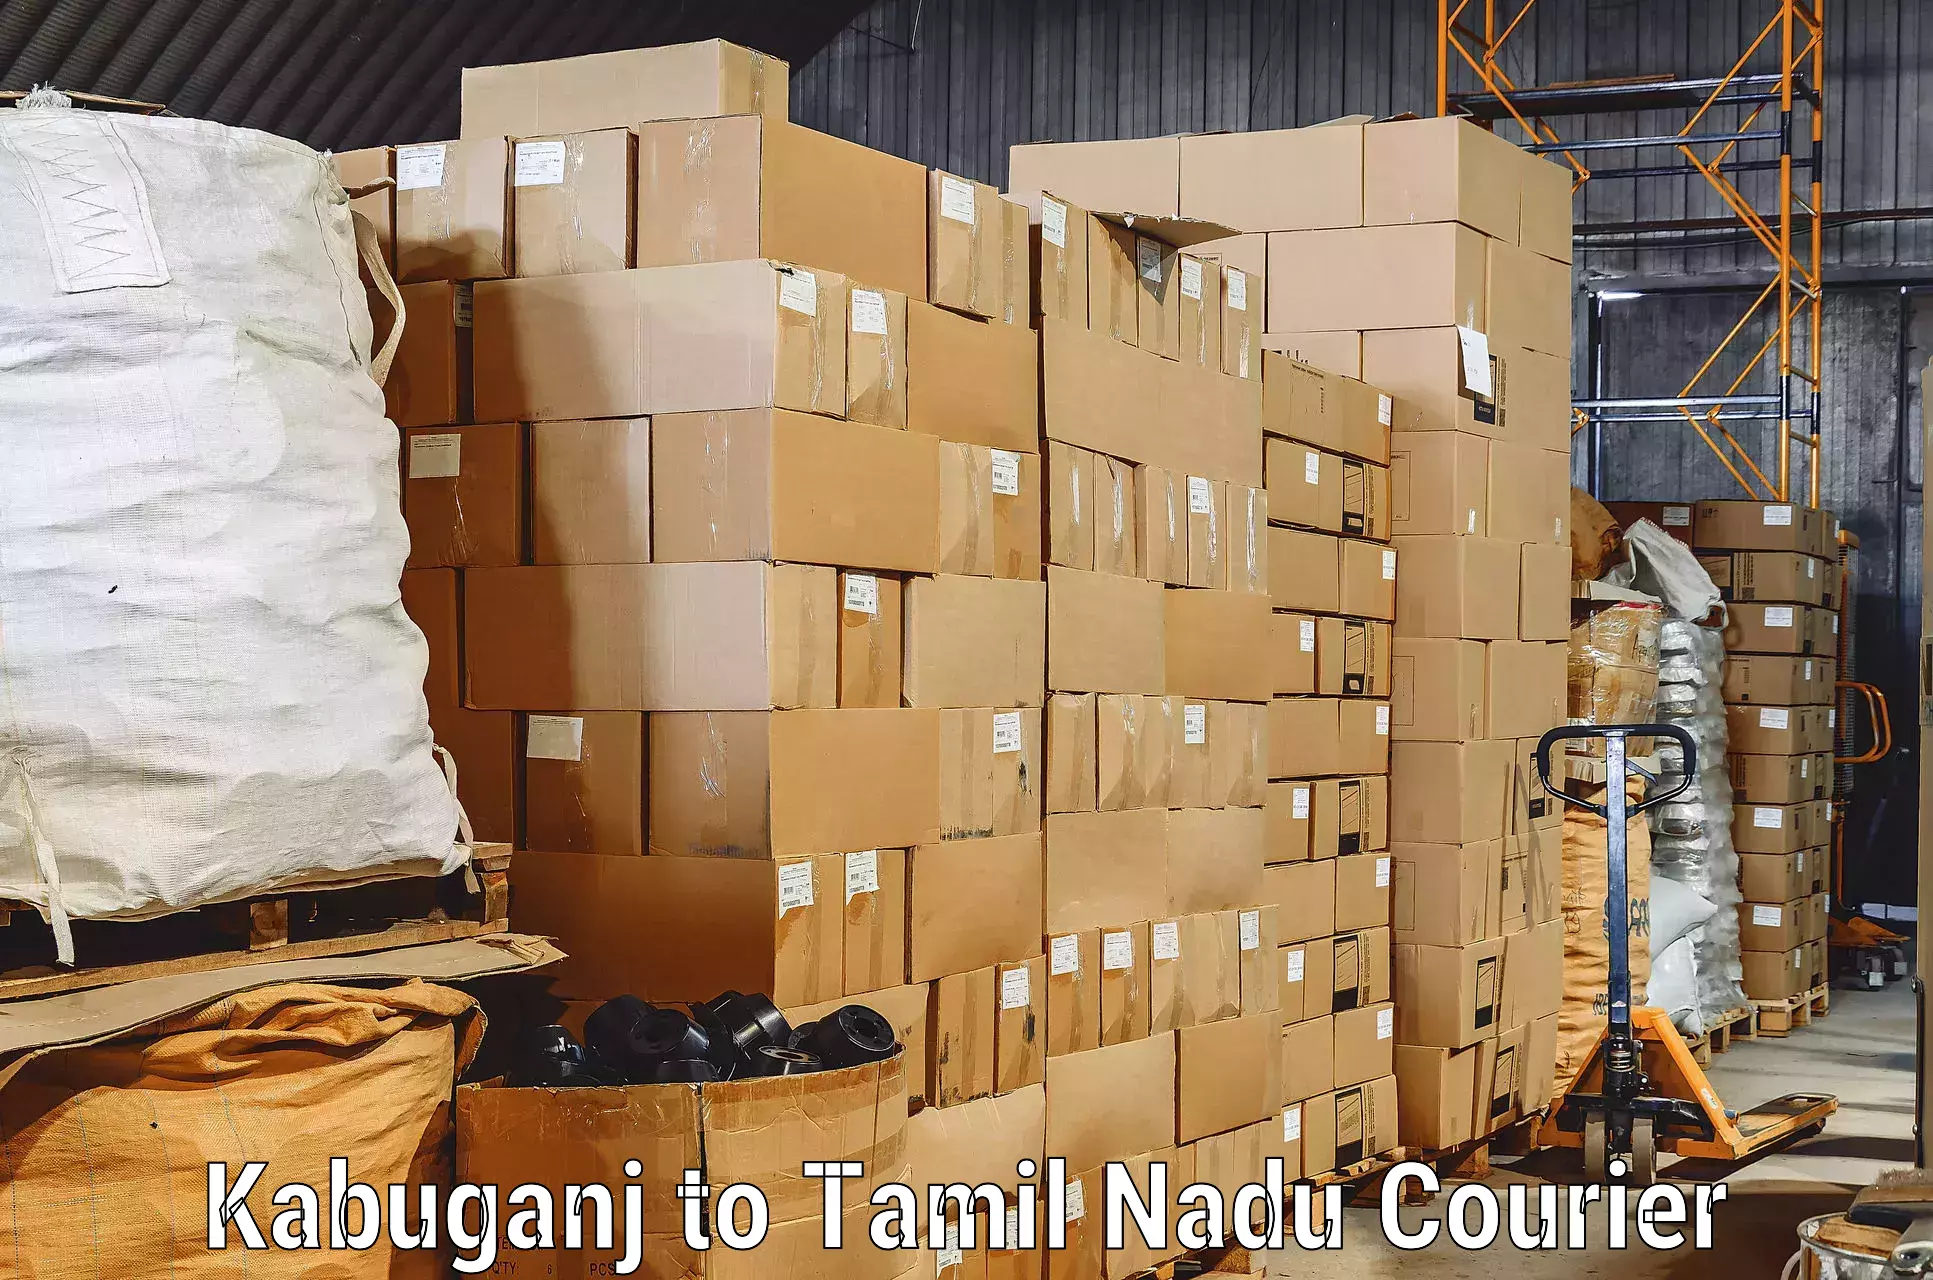 Household goods transporters Kabuganj to Perunali